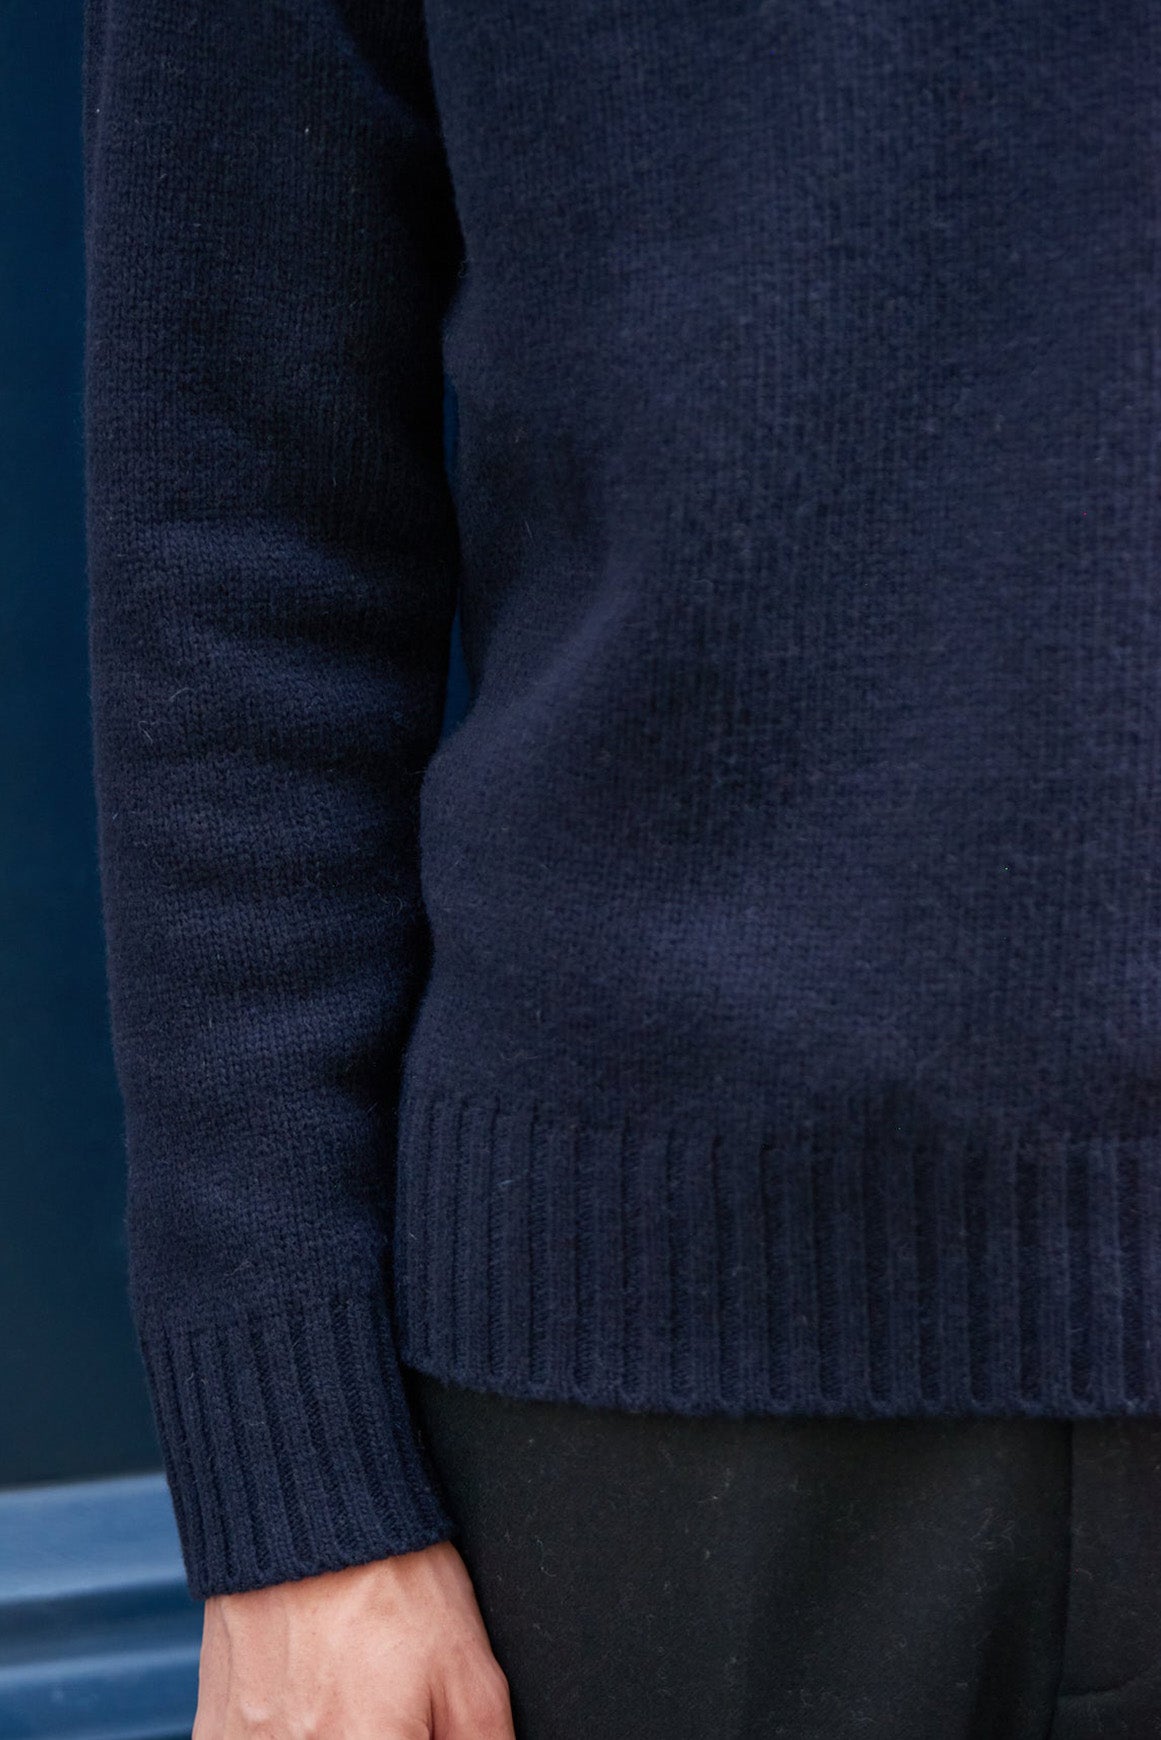 CINO Sweater - Navy/Ecru